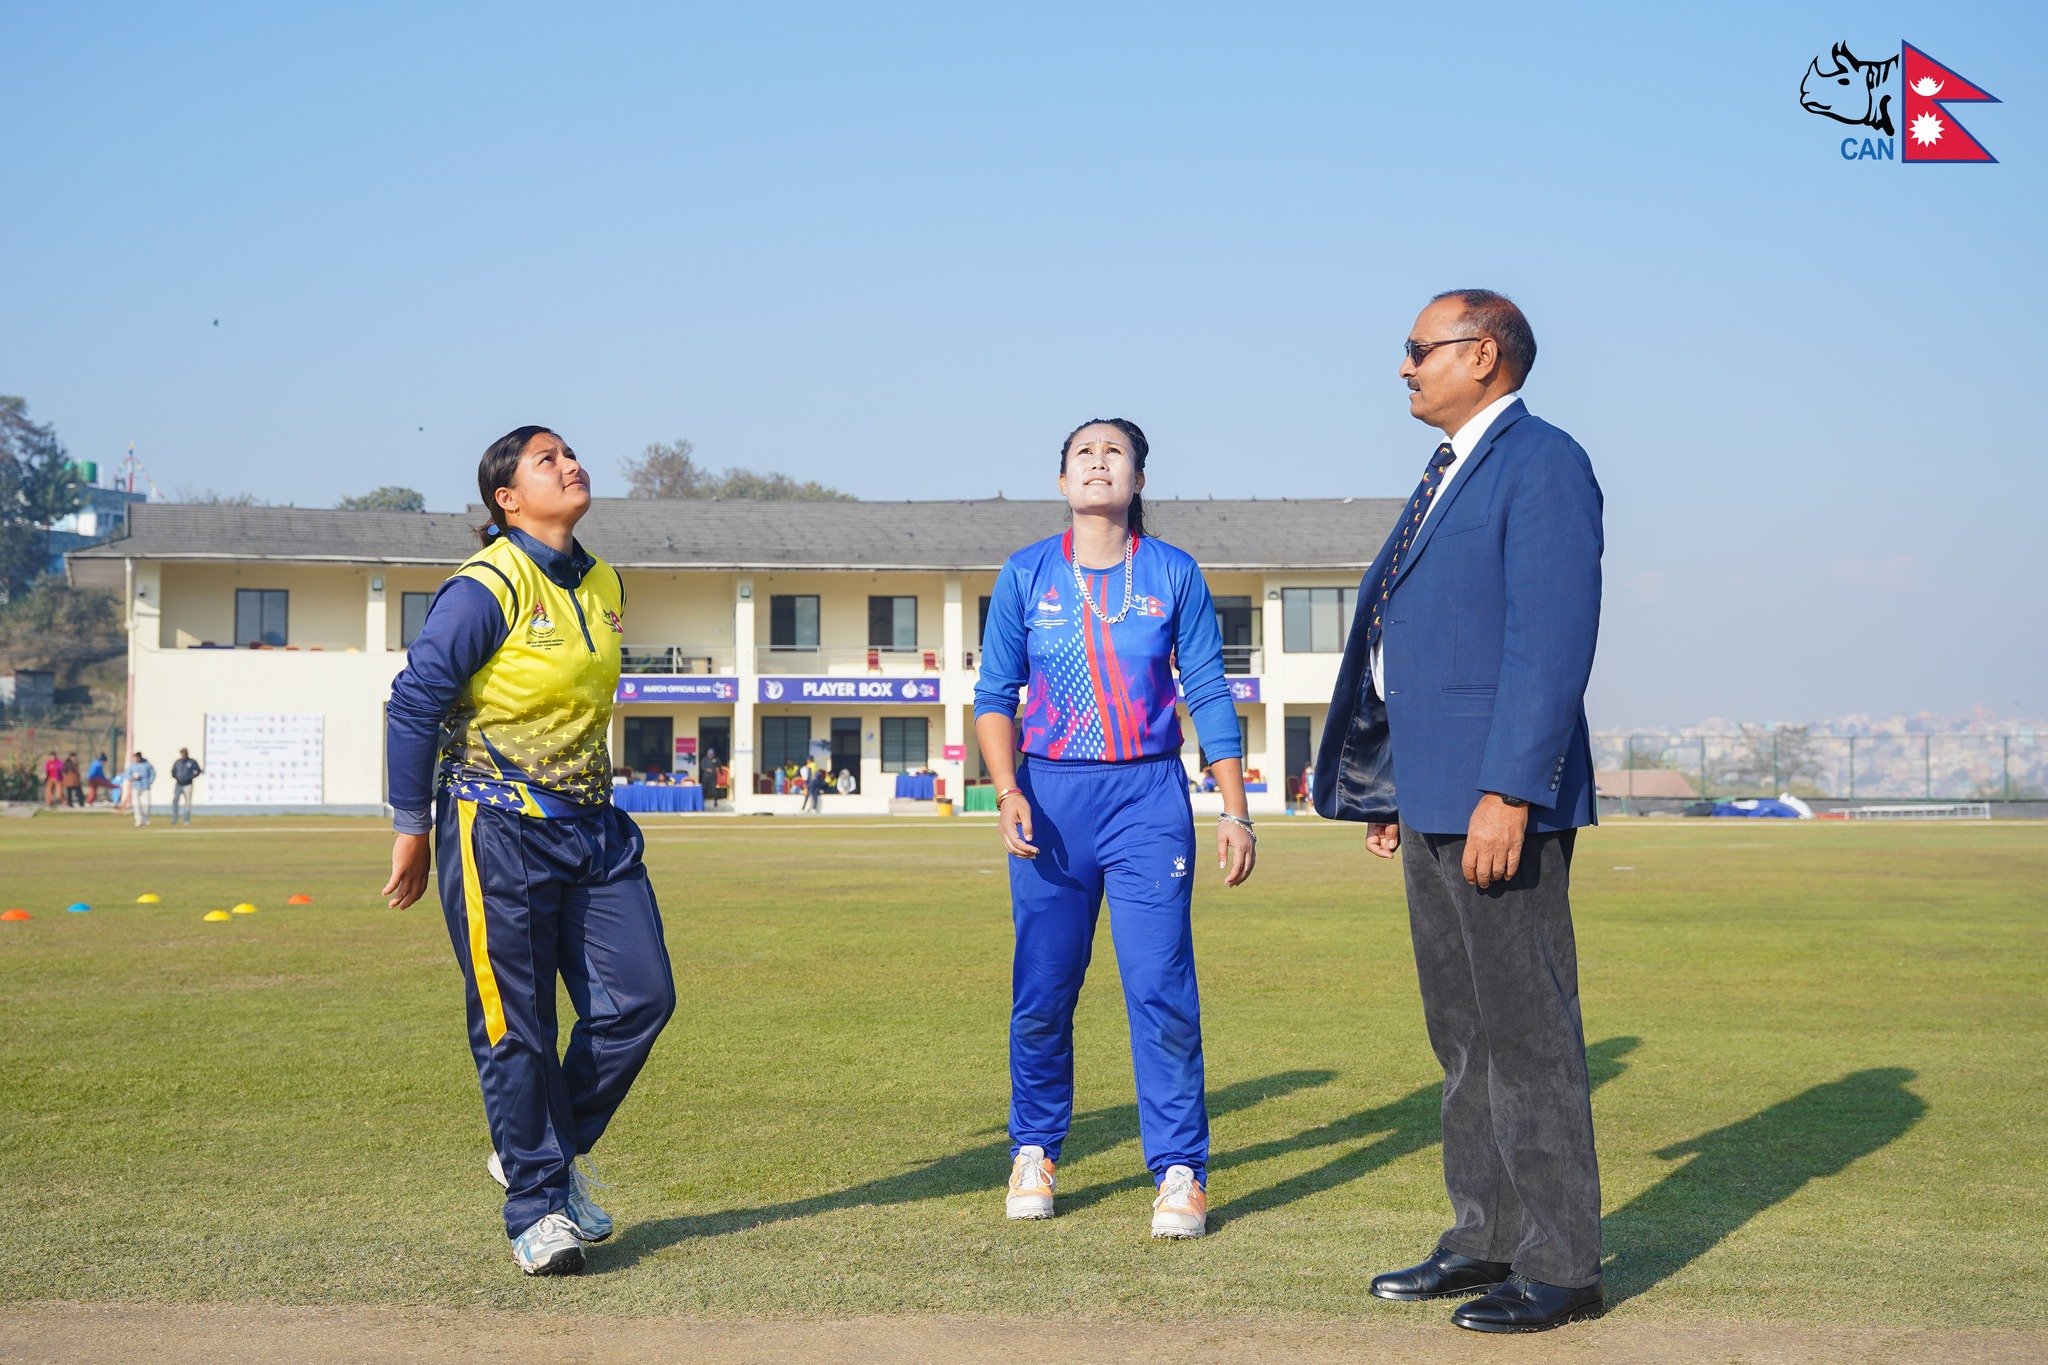 प्रधानमन्त्री कप महिला राष्ट्रिय क्रिकेट : कोशीले गण्डकी प्रदेशलाई दियो १०४ रनको लक्ष्य